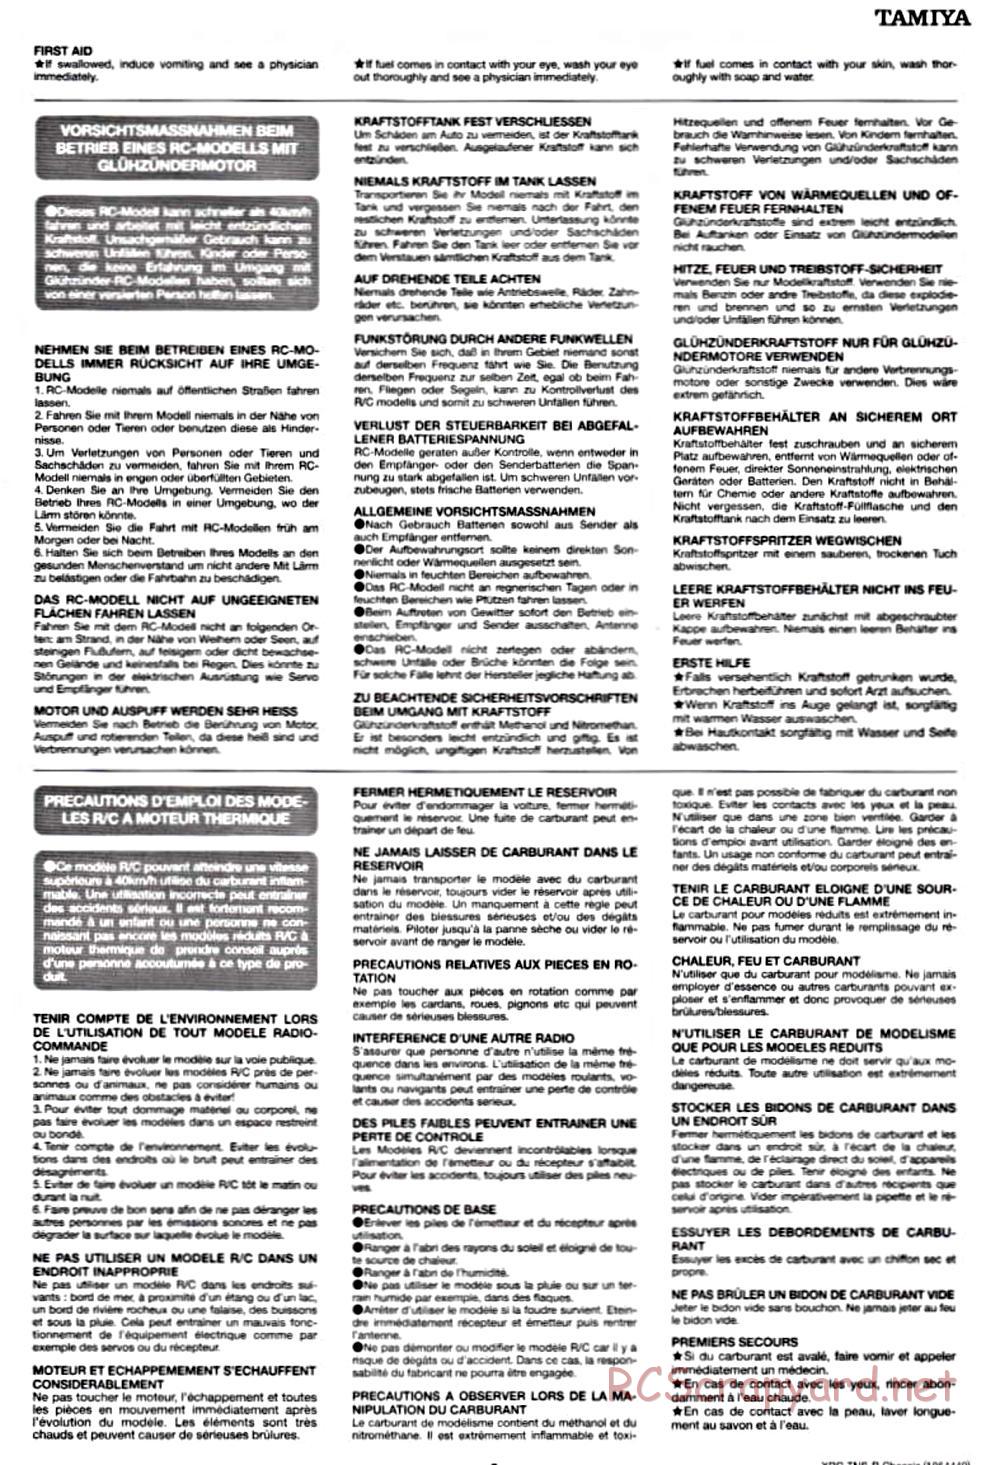 Tamiya - TNS-B Chassis - Manual - Page 3